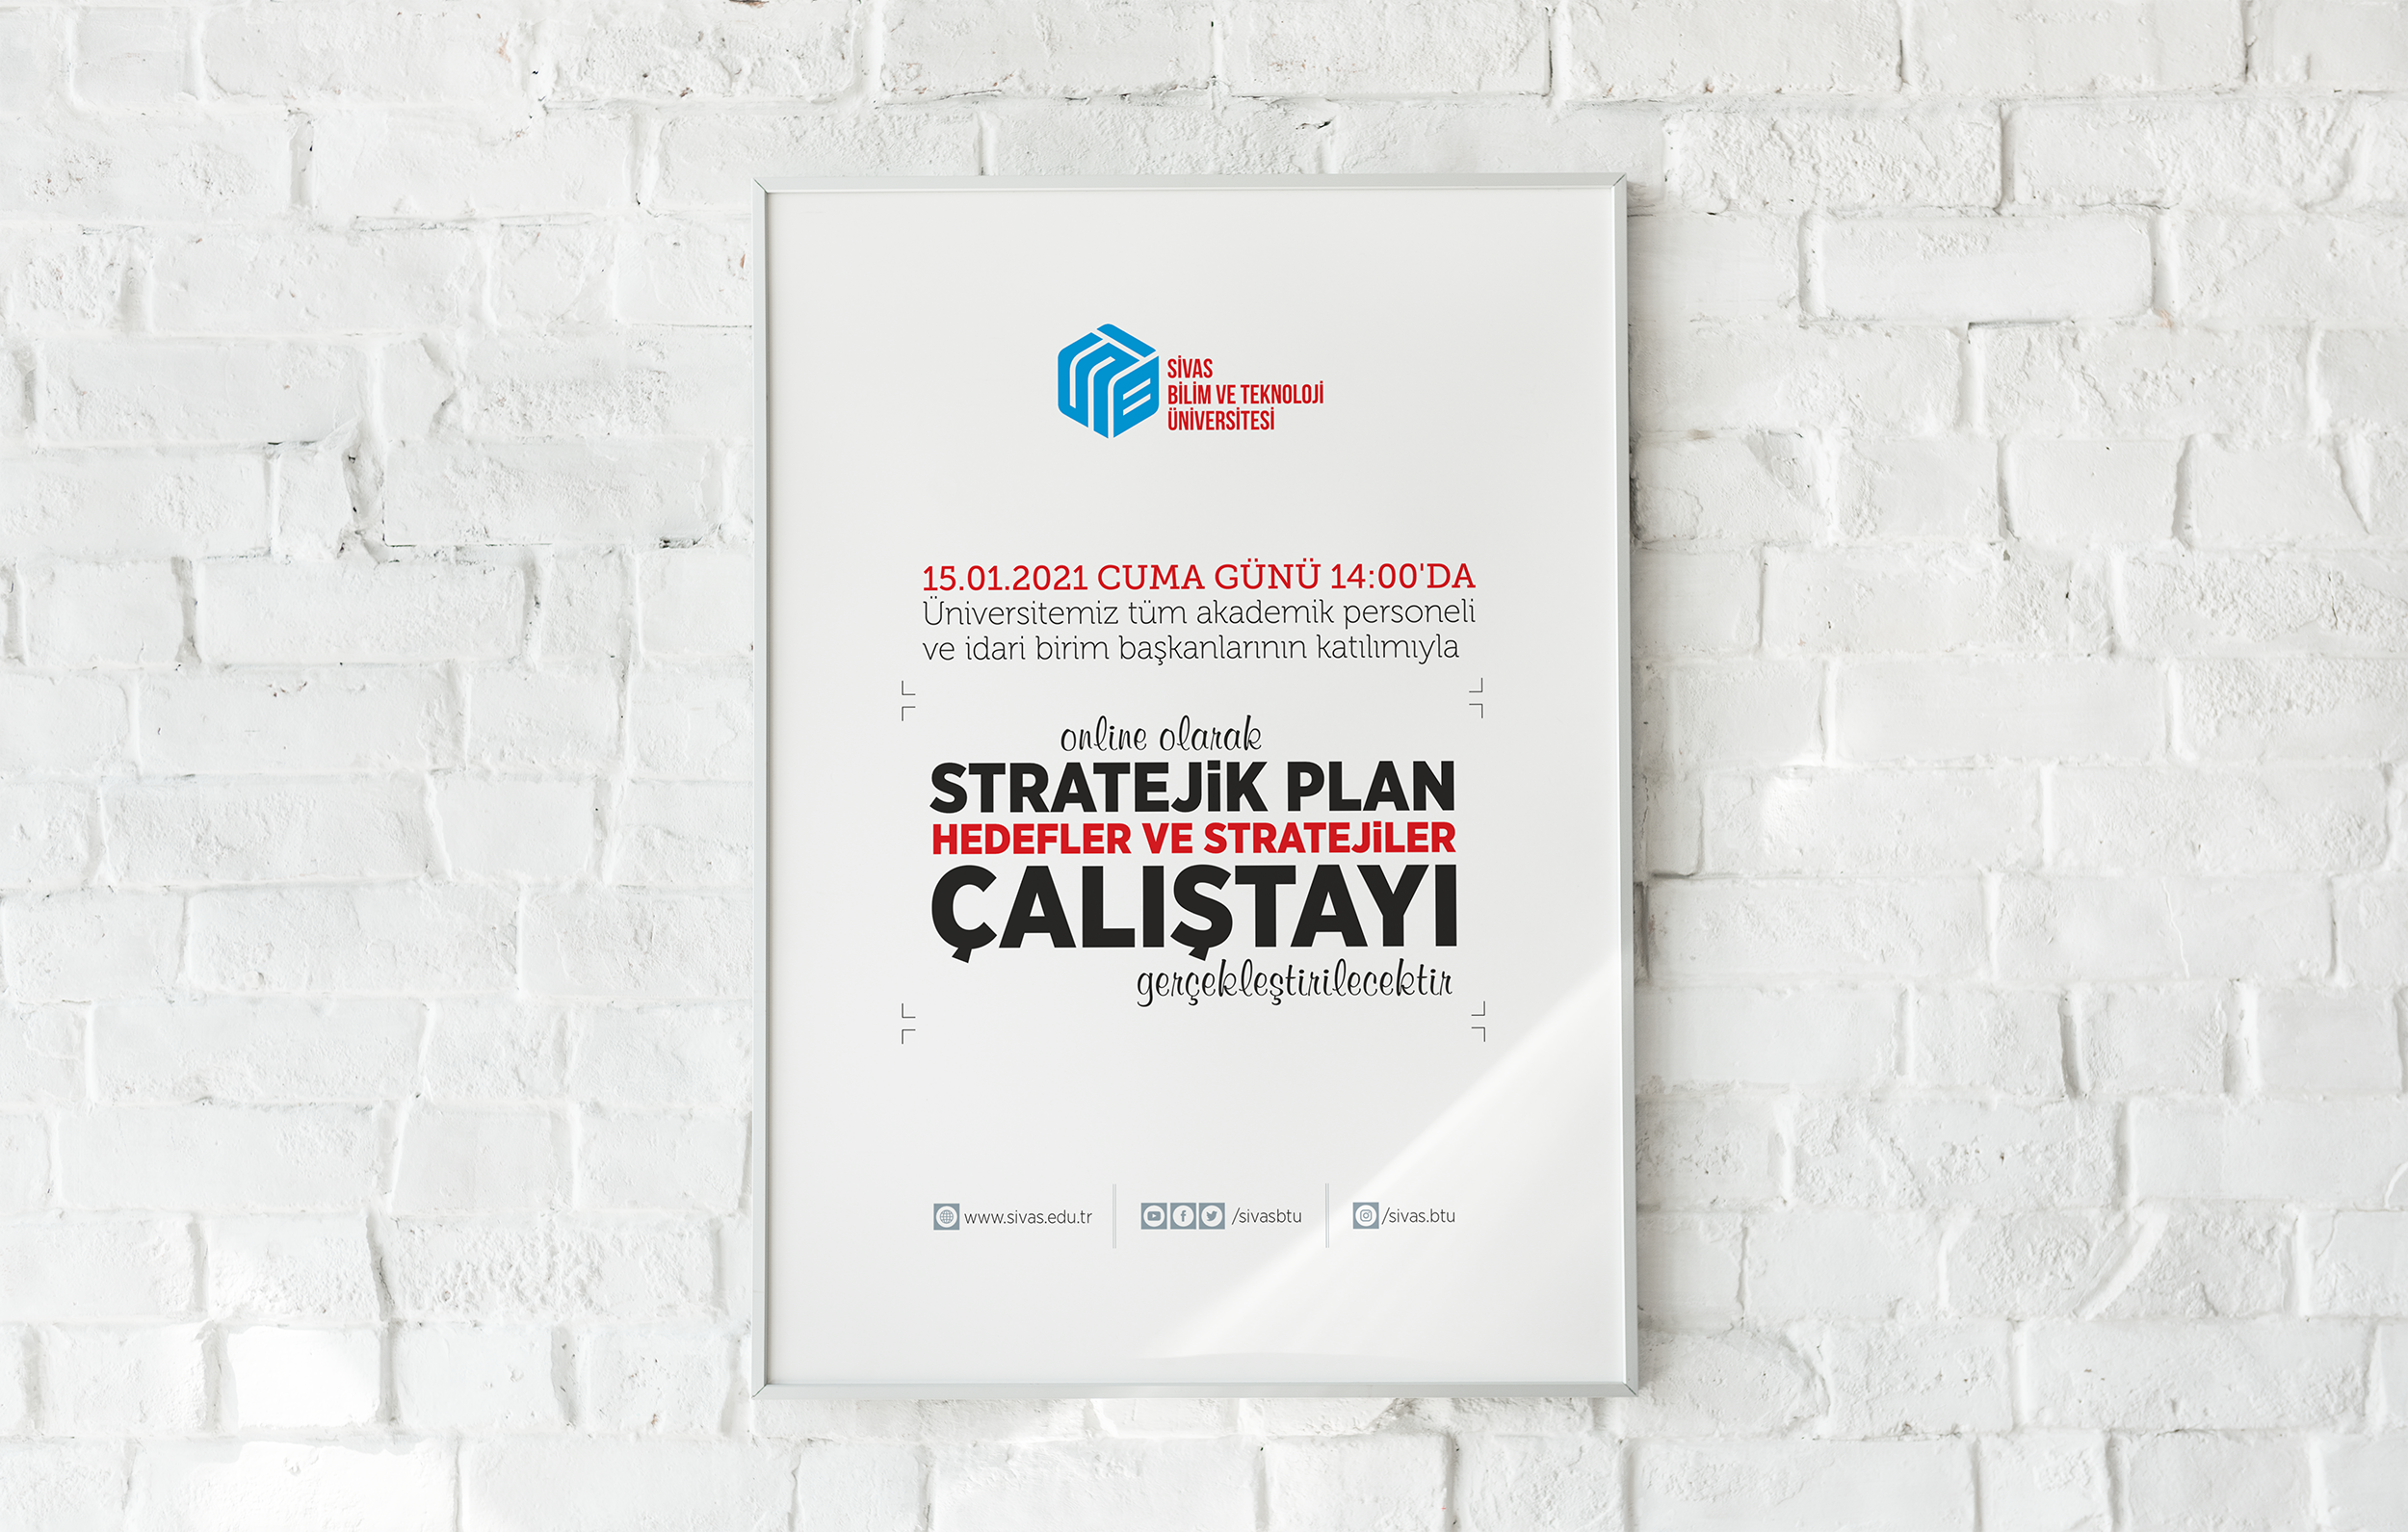 Online Olarak Stratejik Plan Hedefler ve Stratejiler Çalıştayı Gerçekleştirilecektir